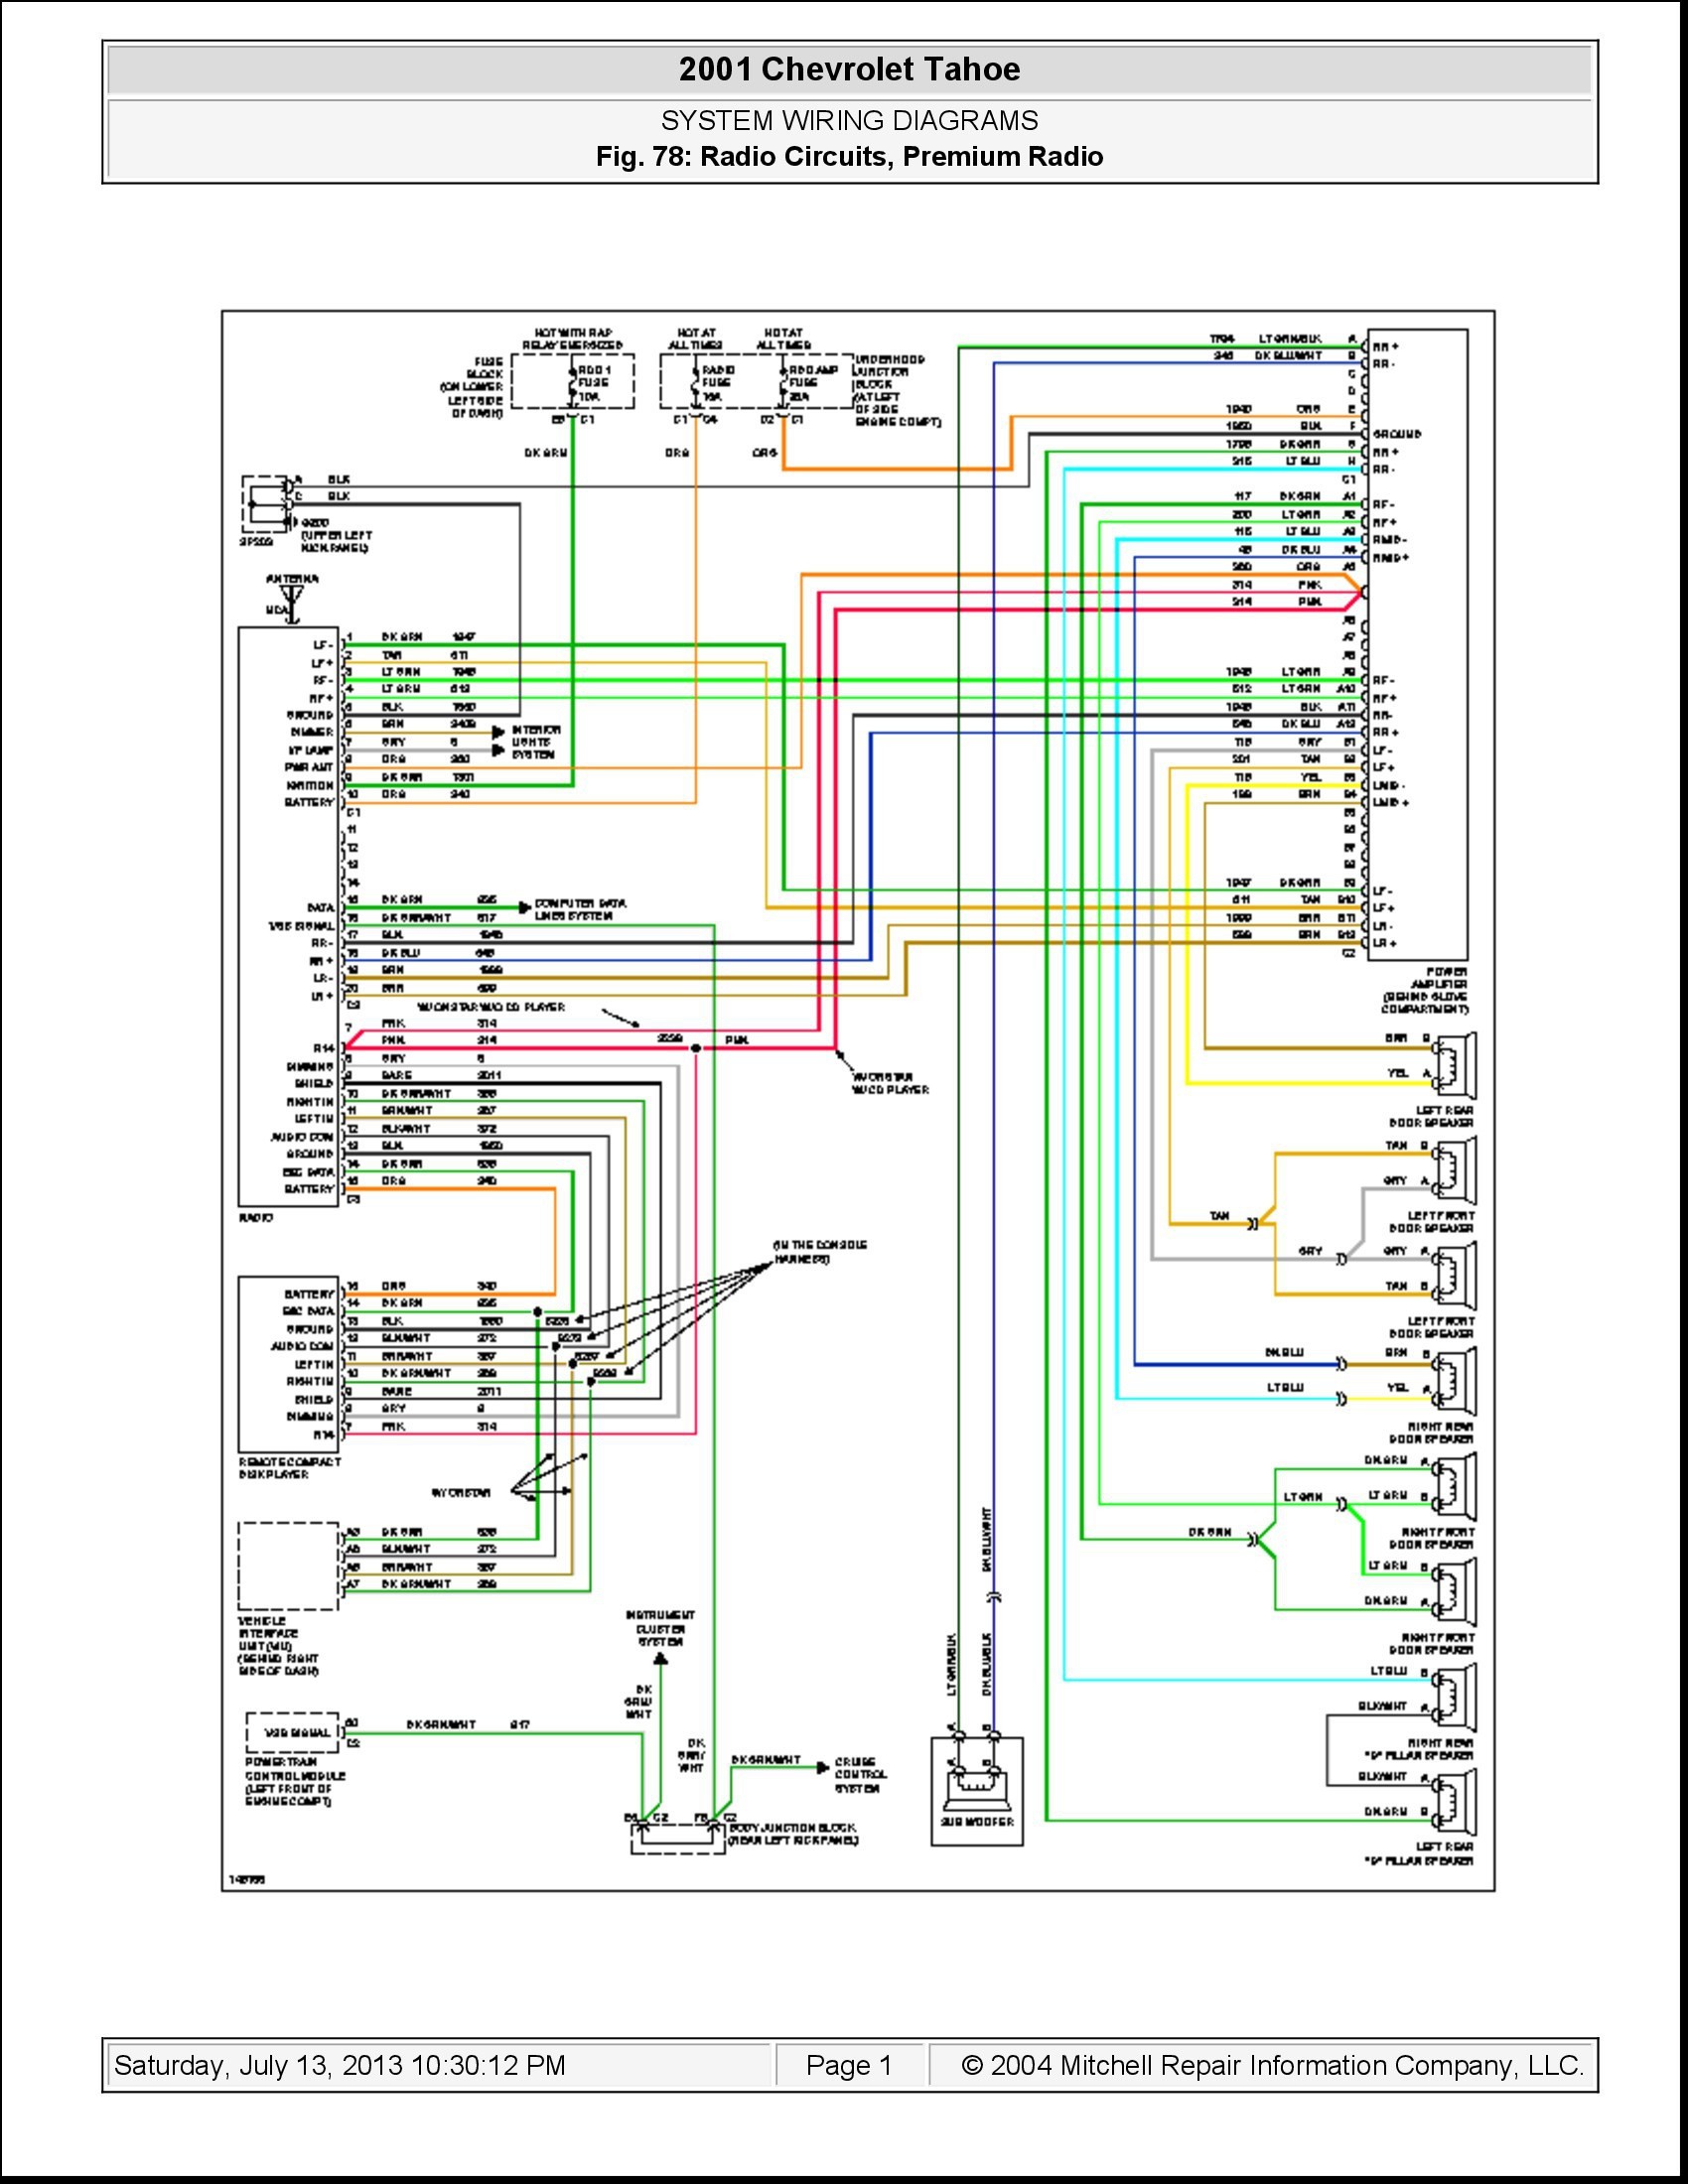 2015 Chevy Silverado Speaker Wiring Diagram Unique 2006 Ford Expedition Wiring Diagram 0d – Wiring Diagram Collection